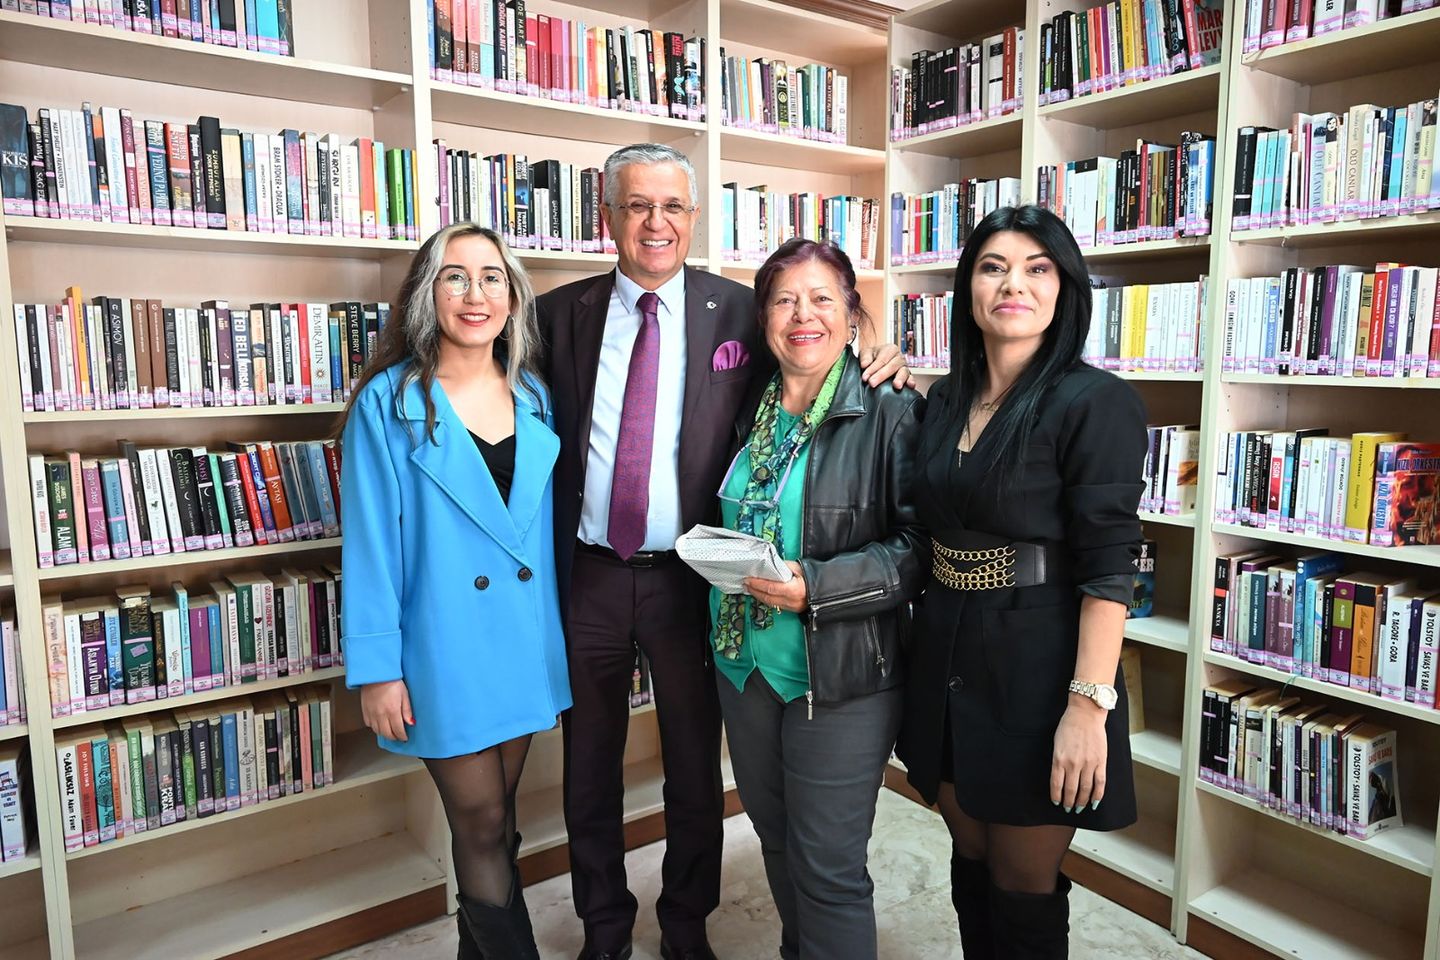 Antalya'nın Kemer ilçesinde Kütüphane Haftası kutlamaları düzenlendi. Kemer Belediye Başkanı, Hilmiye Serin İlçe Halk Kütüphanesi'ni ziyaret etti